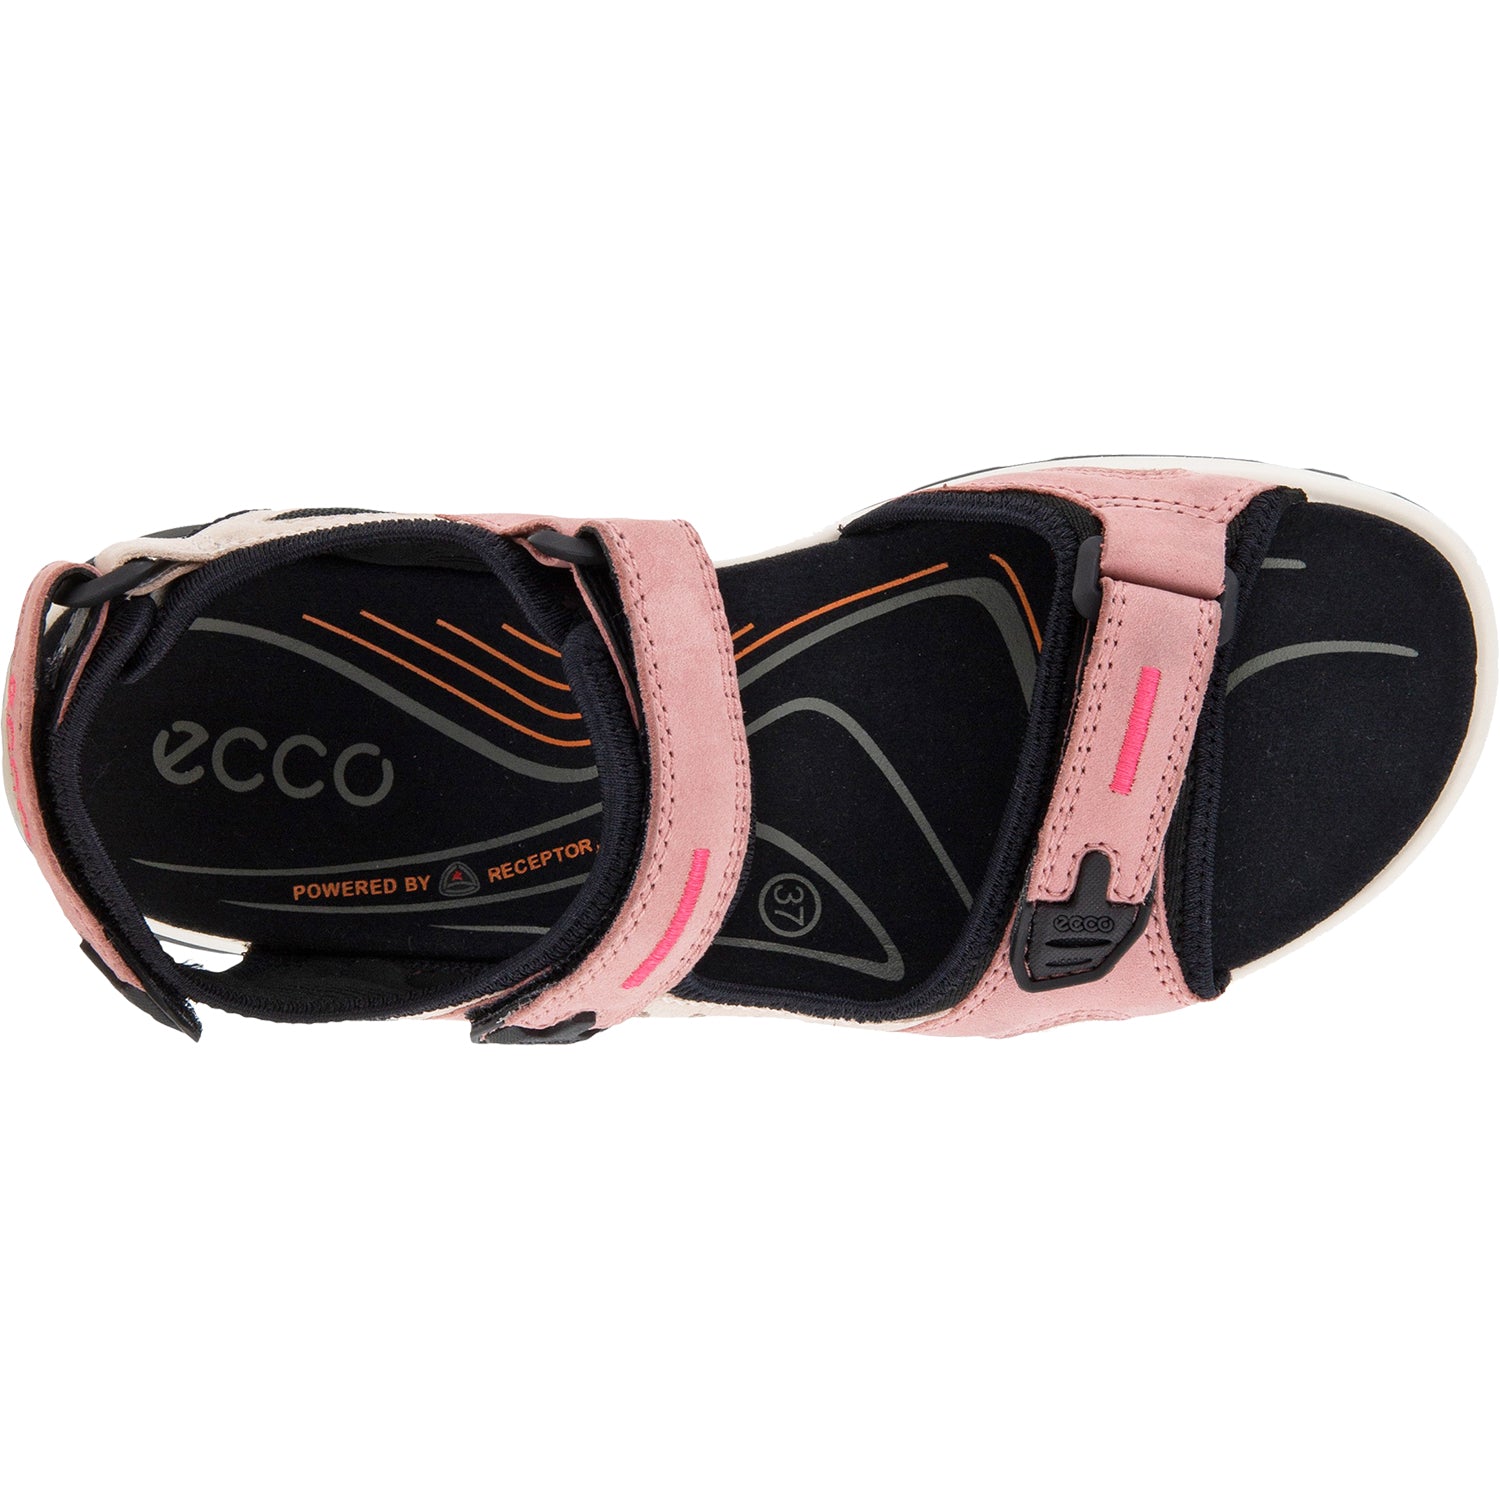 Hukommelse klamre sig forfængelighed Ecco Yucatan Damask Rose | Women's Outdoor Sandals | Footwear etc.